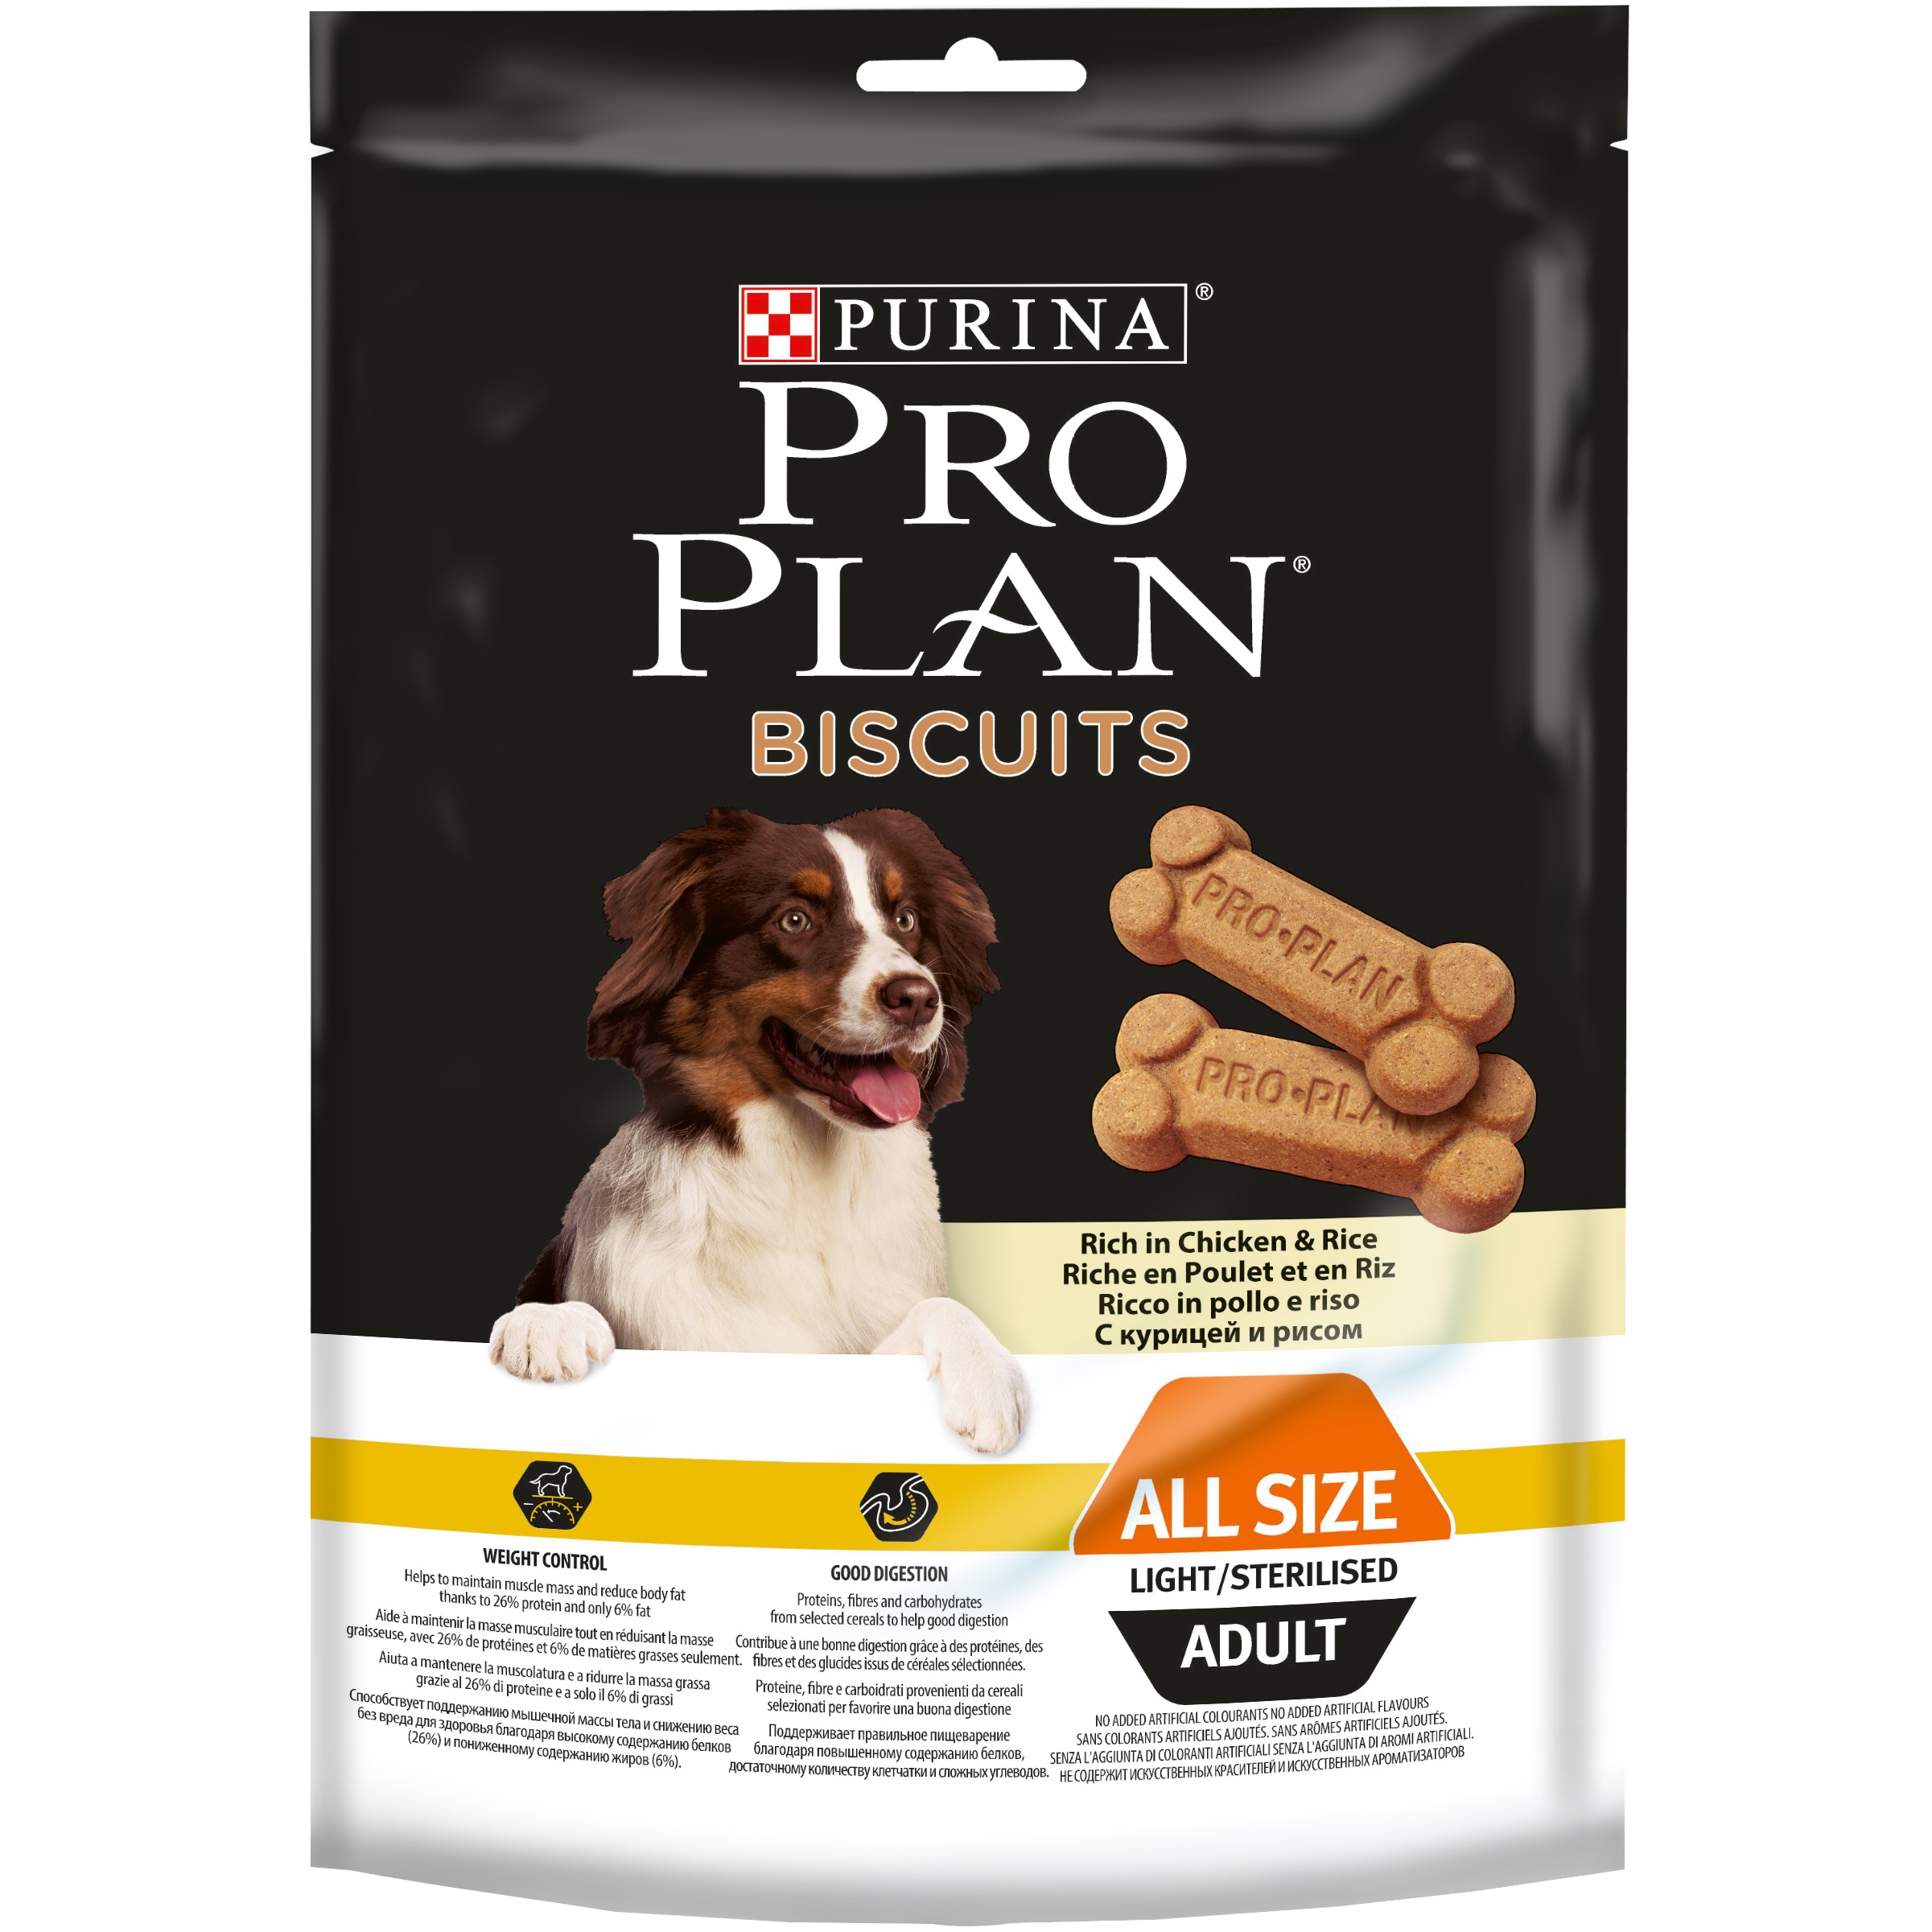 PRO PLAN Biscuits лакомство для собак низкокалорийное, с курицей и рисом